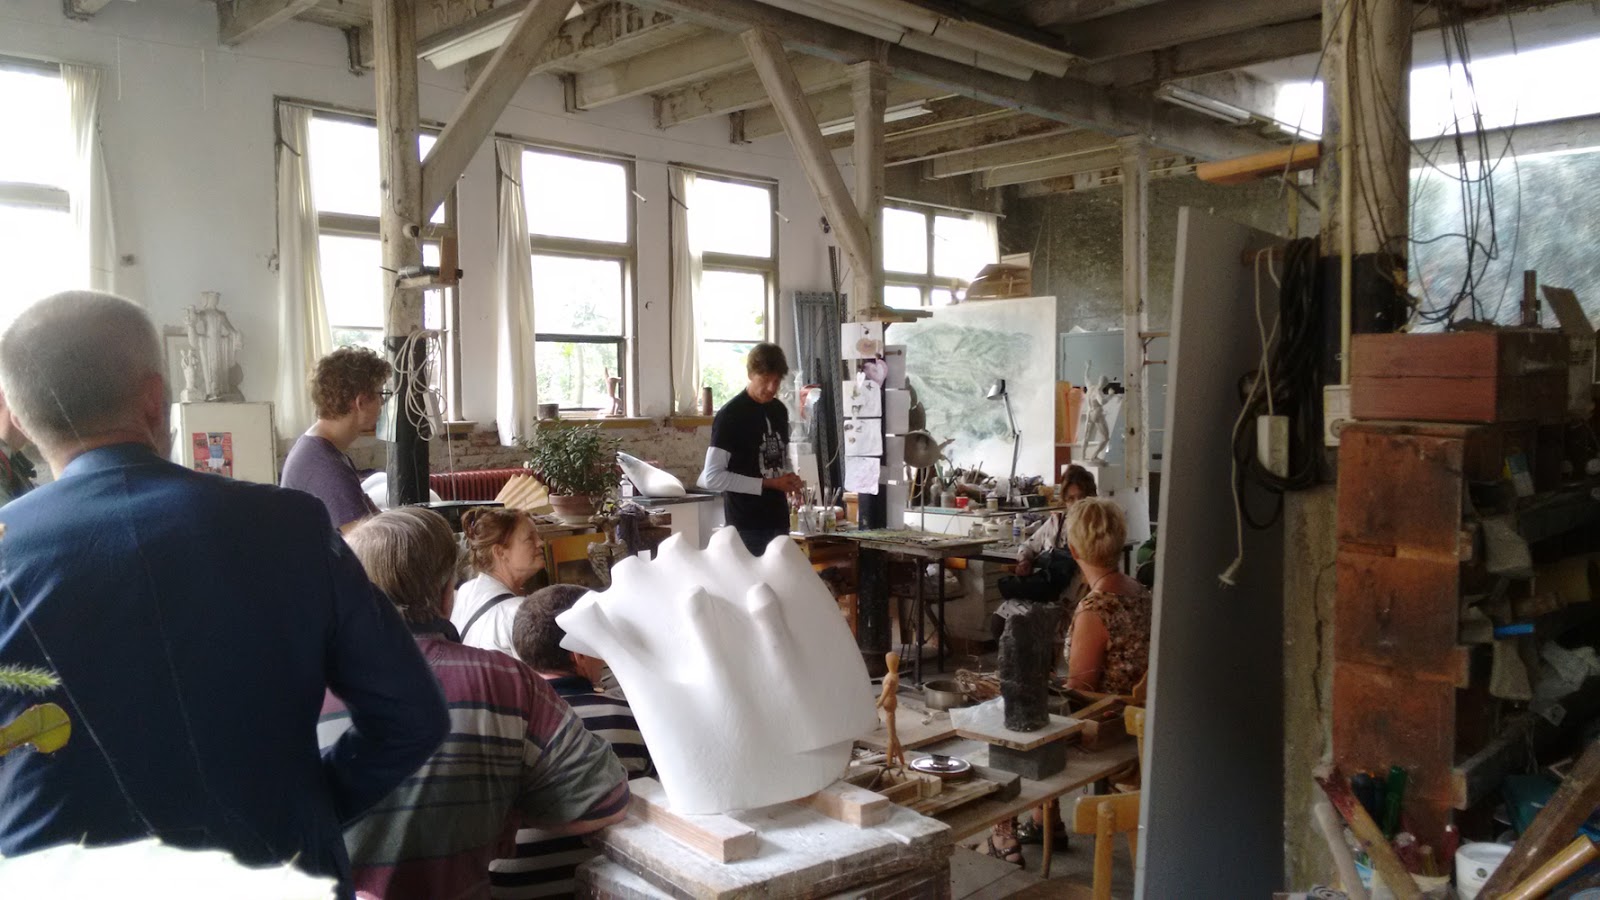 Het atelier van Mieke Kleinendorst was ooit de beeldhouwerswerkplaats van Hildo Krop.